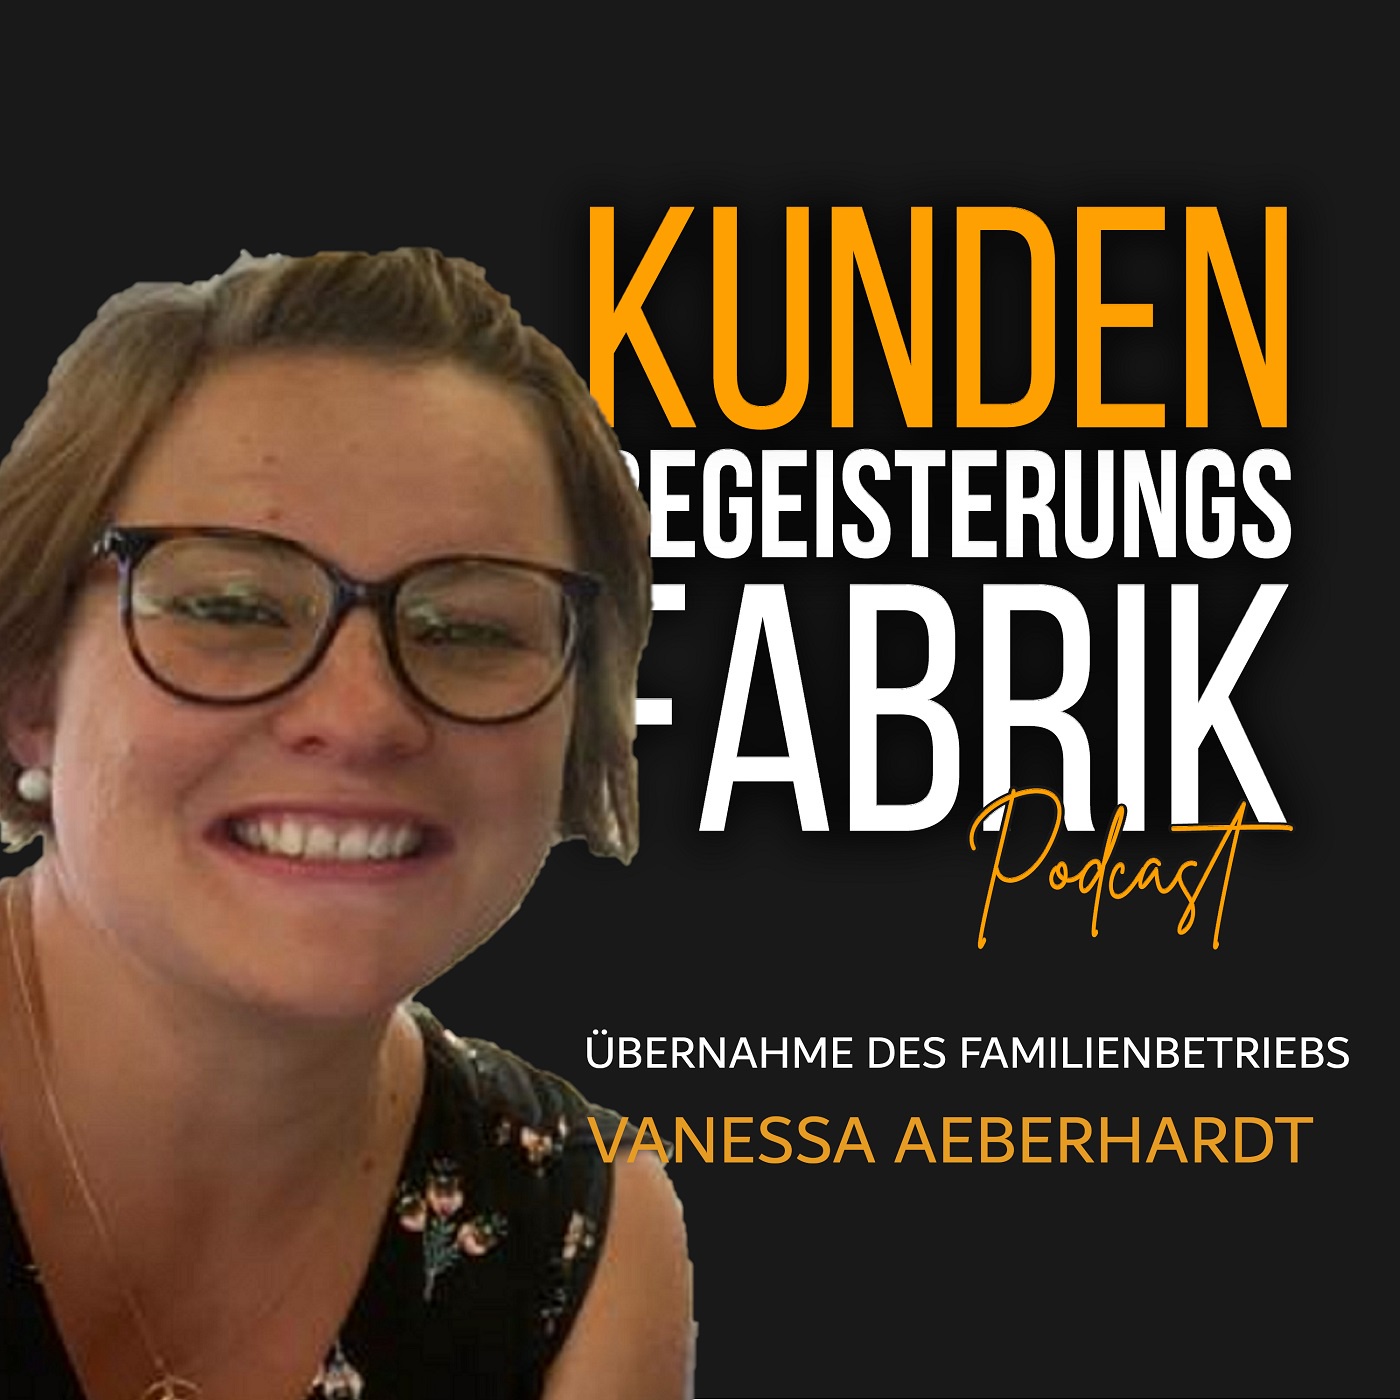 Vanessa Aeberhardt: Übernahme und Ausbau des Familienbetriebs